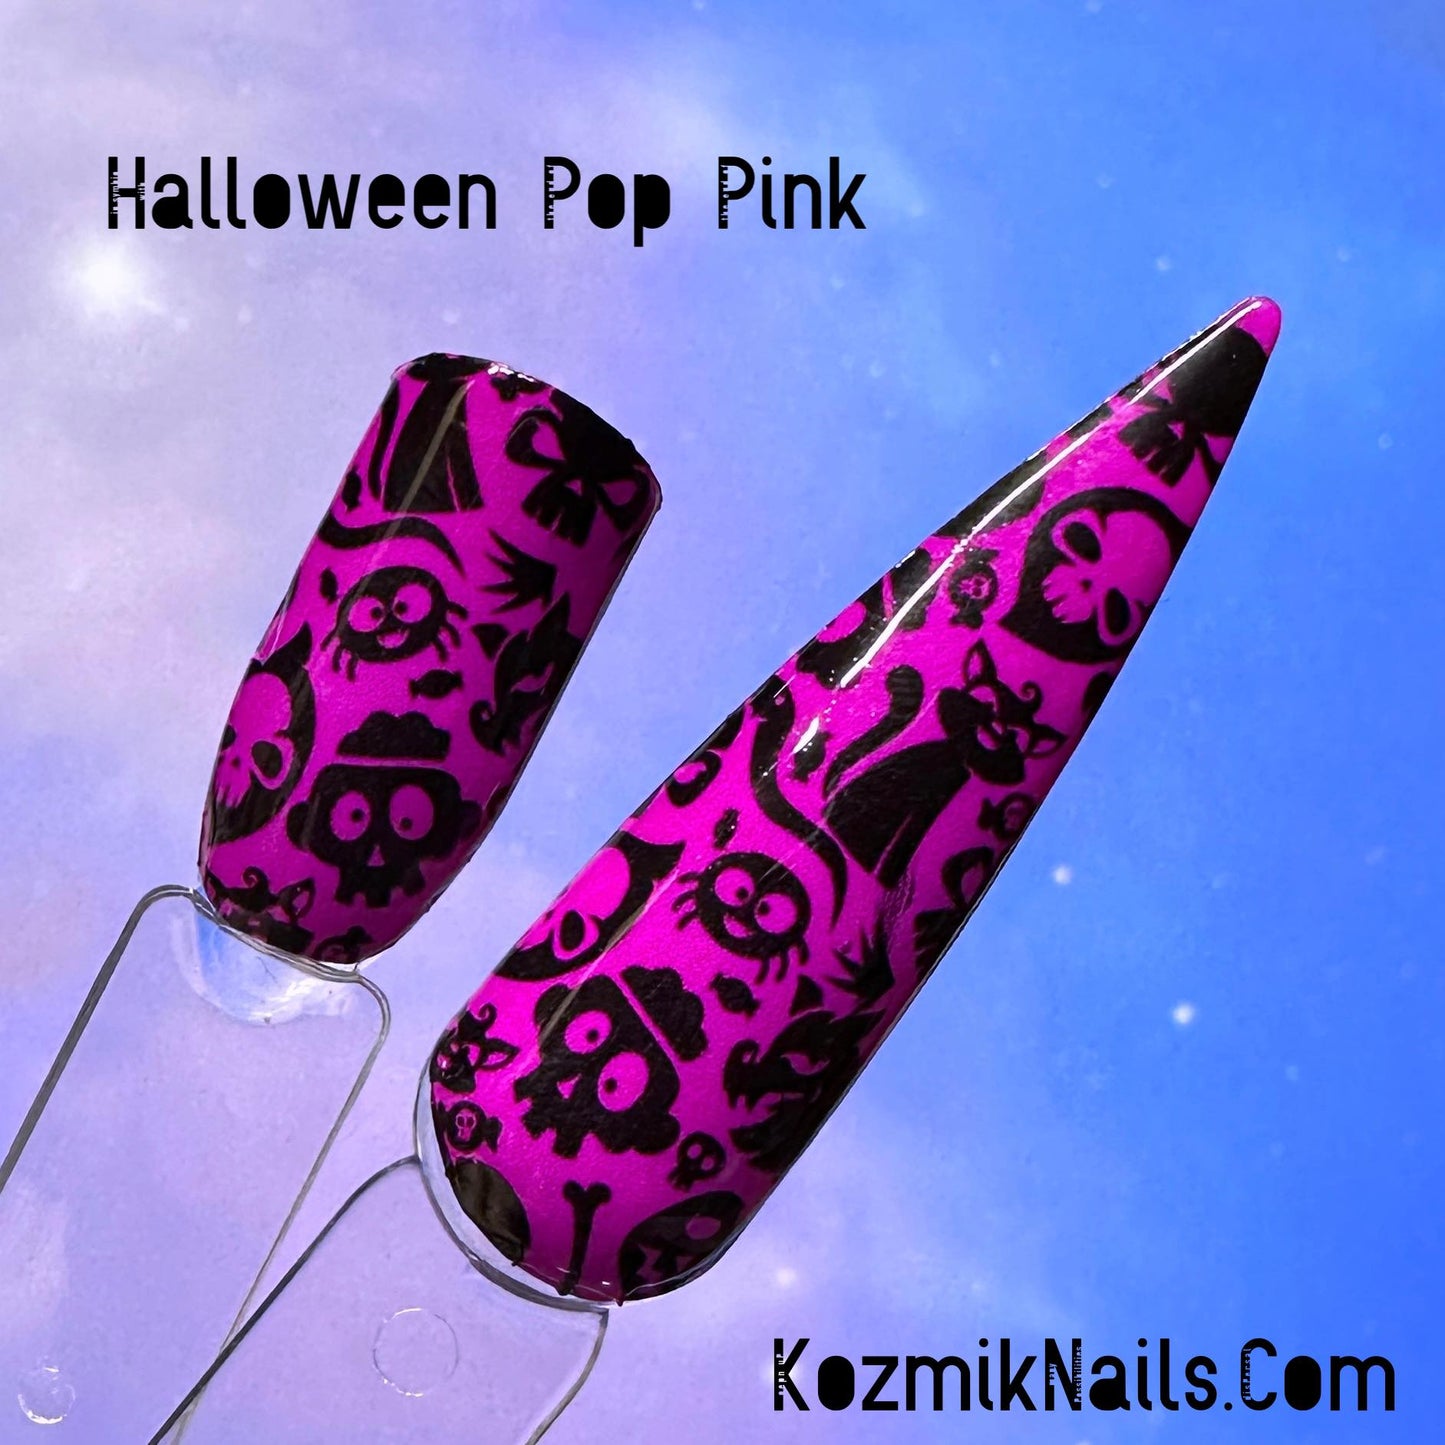 Halloween Pop Pink